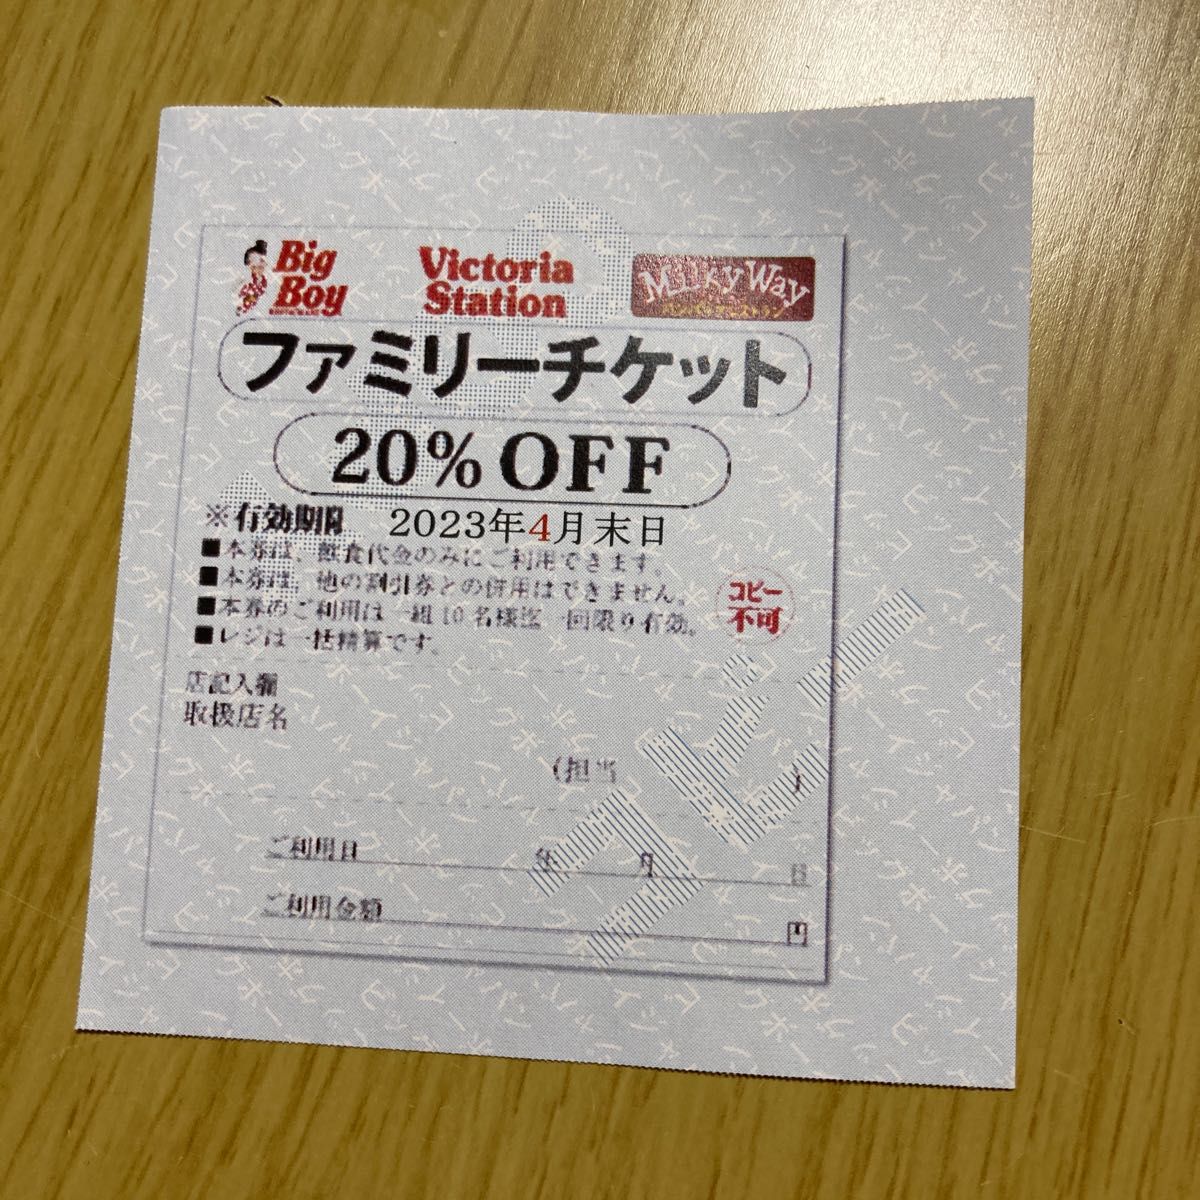 直販限定激安 ビッグボーイ ファミリーチケット 20%OFF 正規 激安 店:182円 レストラン/食事 券